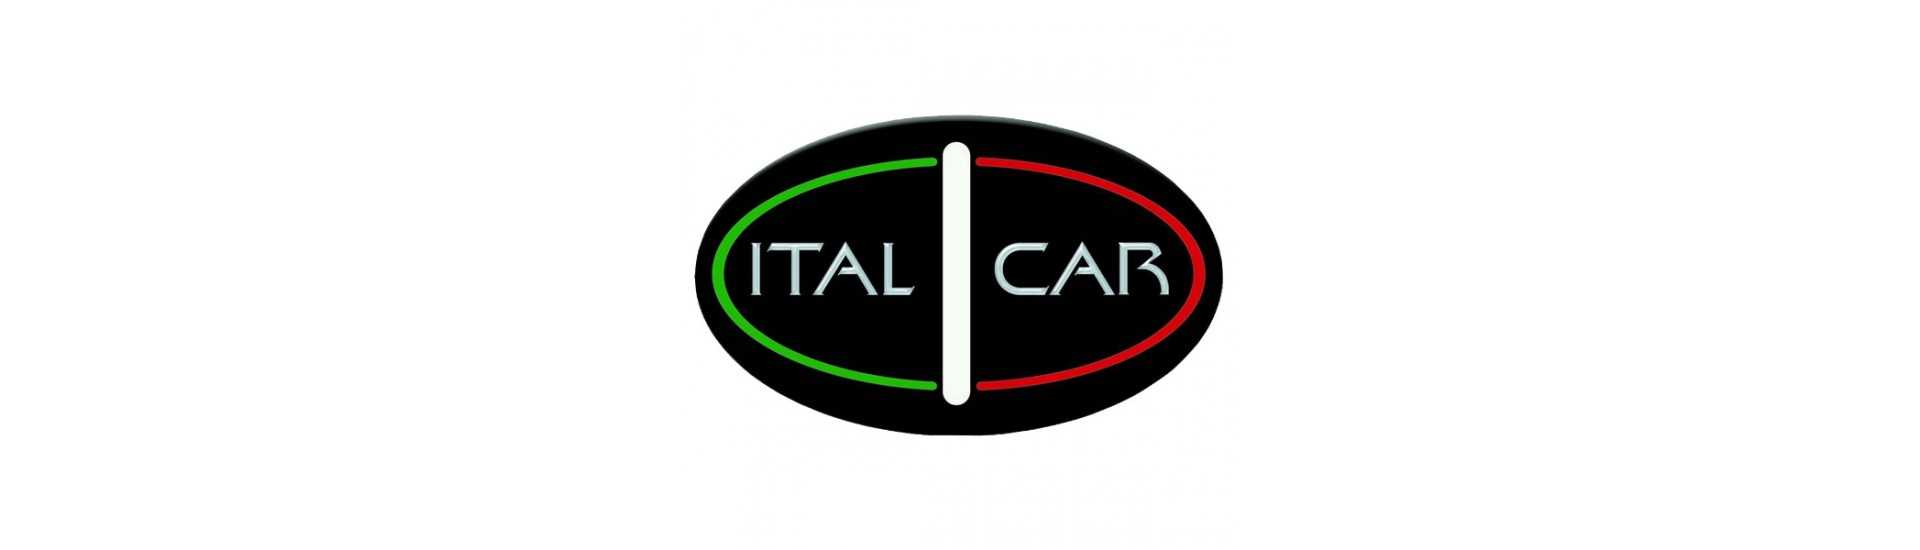 Fahre zum besten Preis für Auto ohne Lizenz Italcar